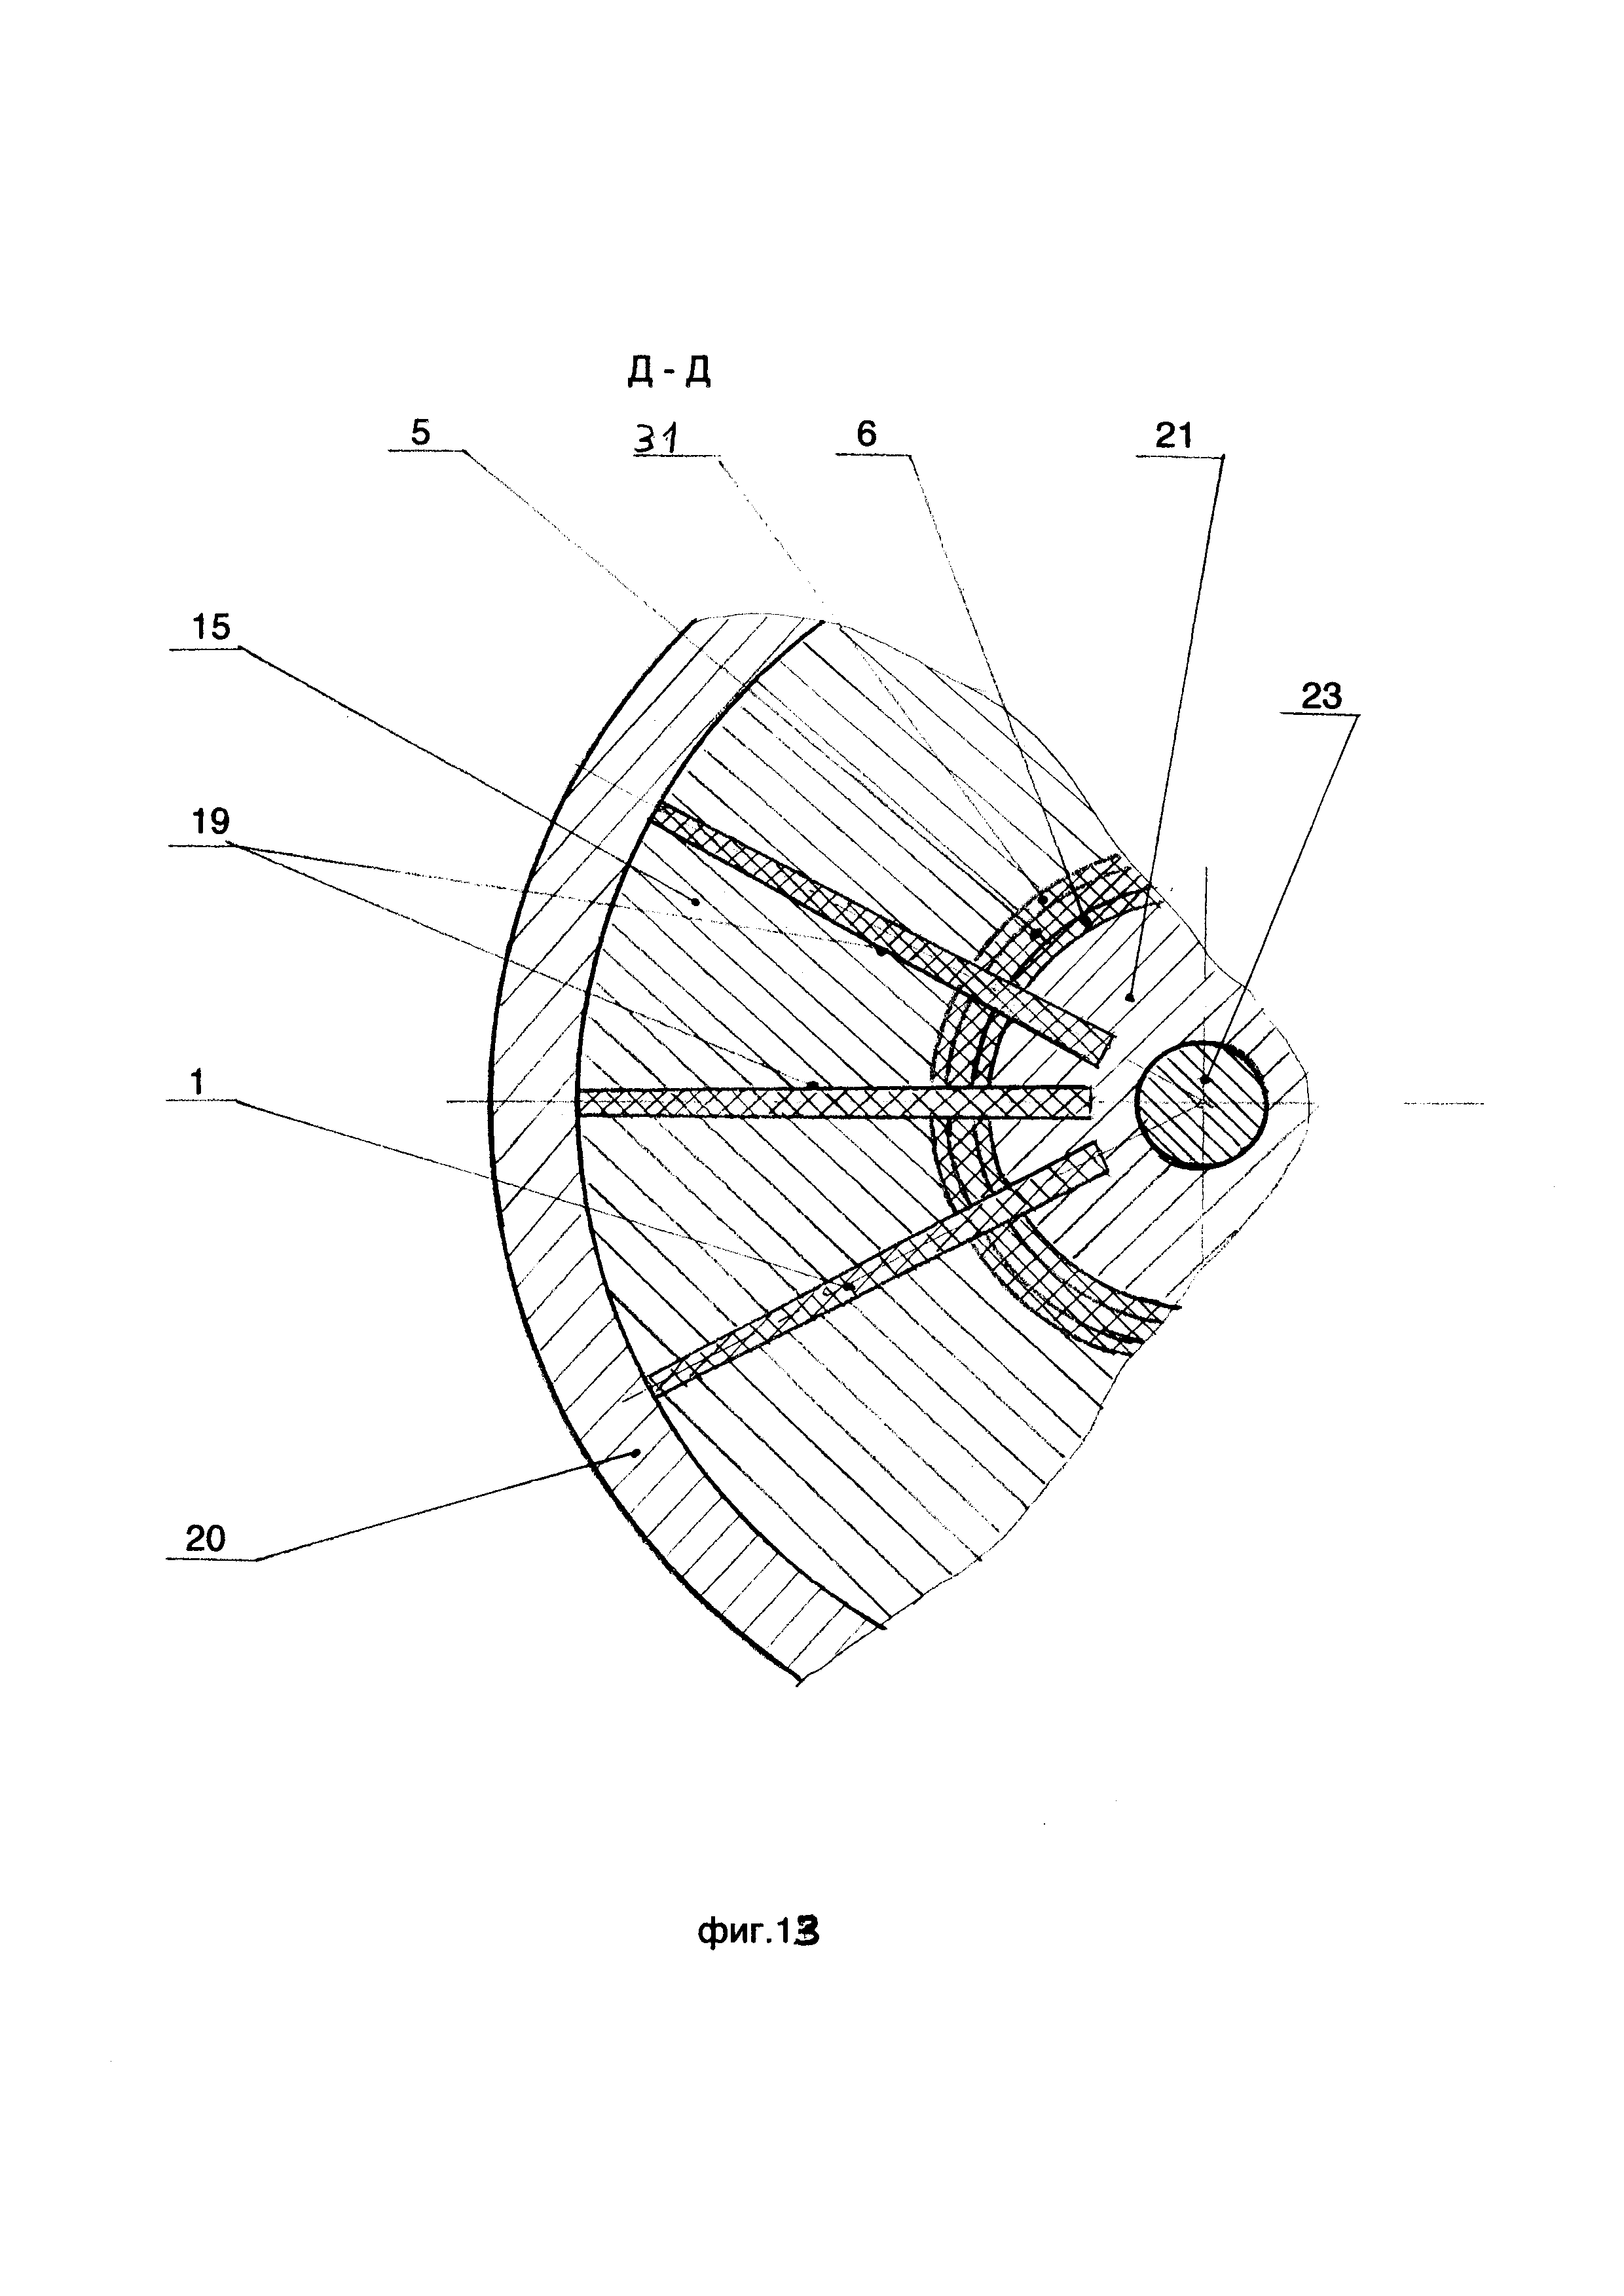 Рабочее колесо вентилятора с обтекателем и способ изготовления из композиционного материала